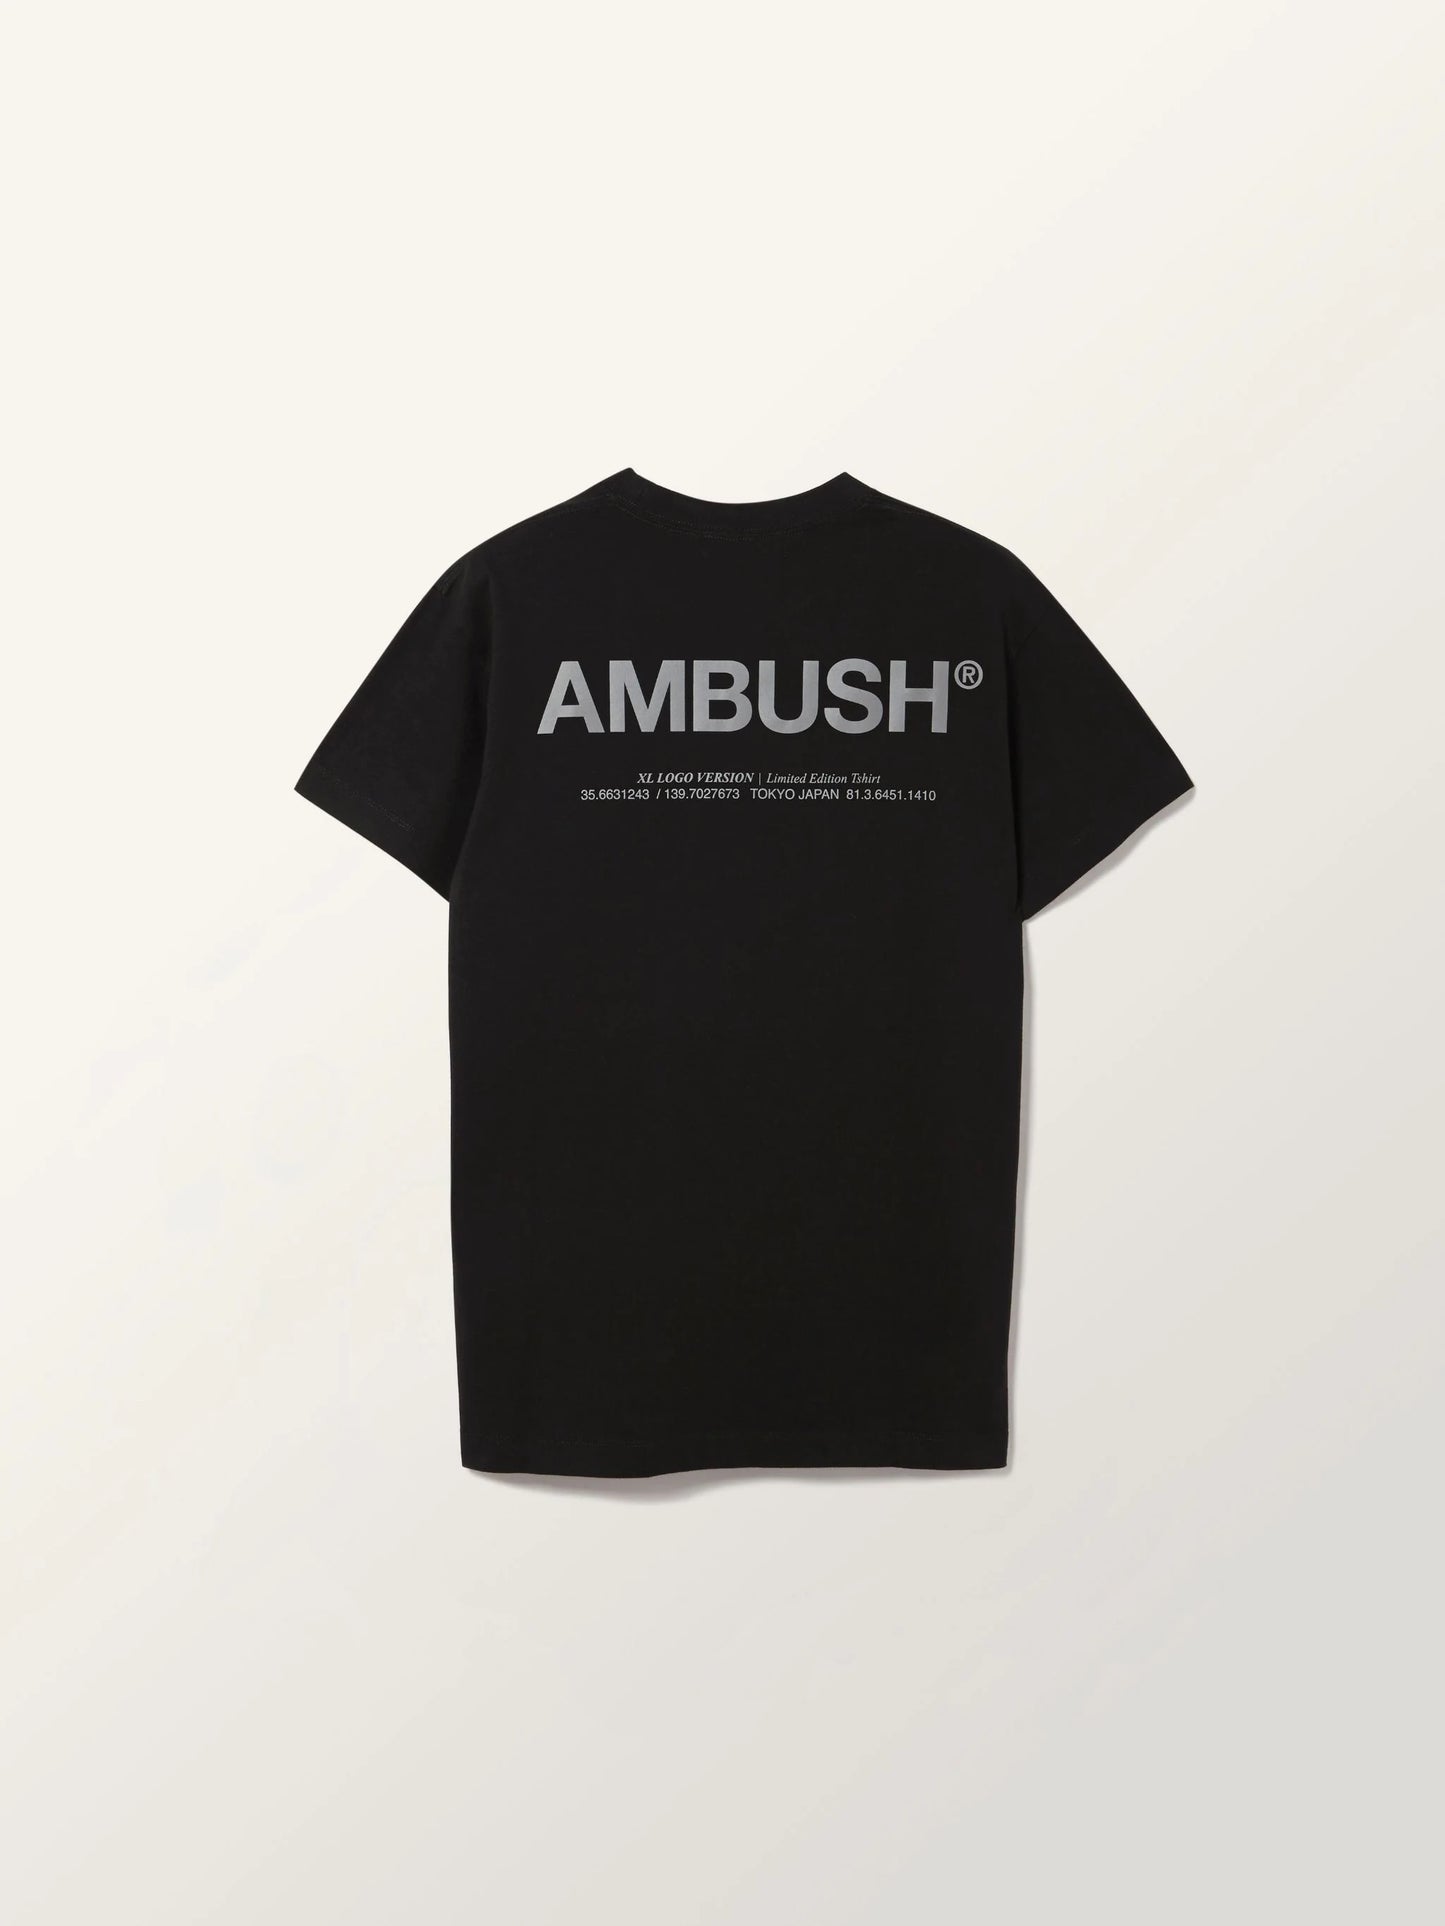 AMBUSH 3M Reflective Black Tee